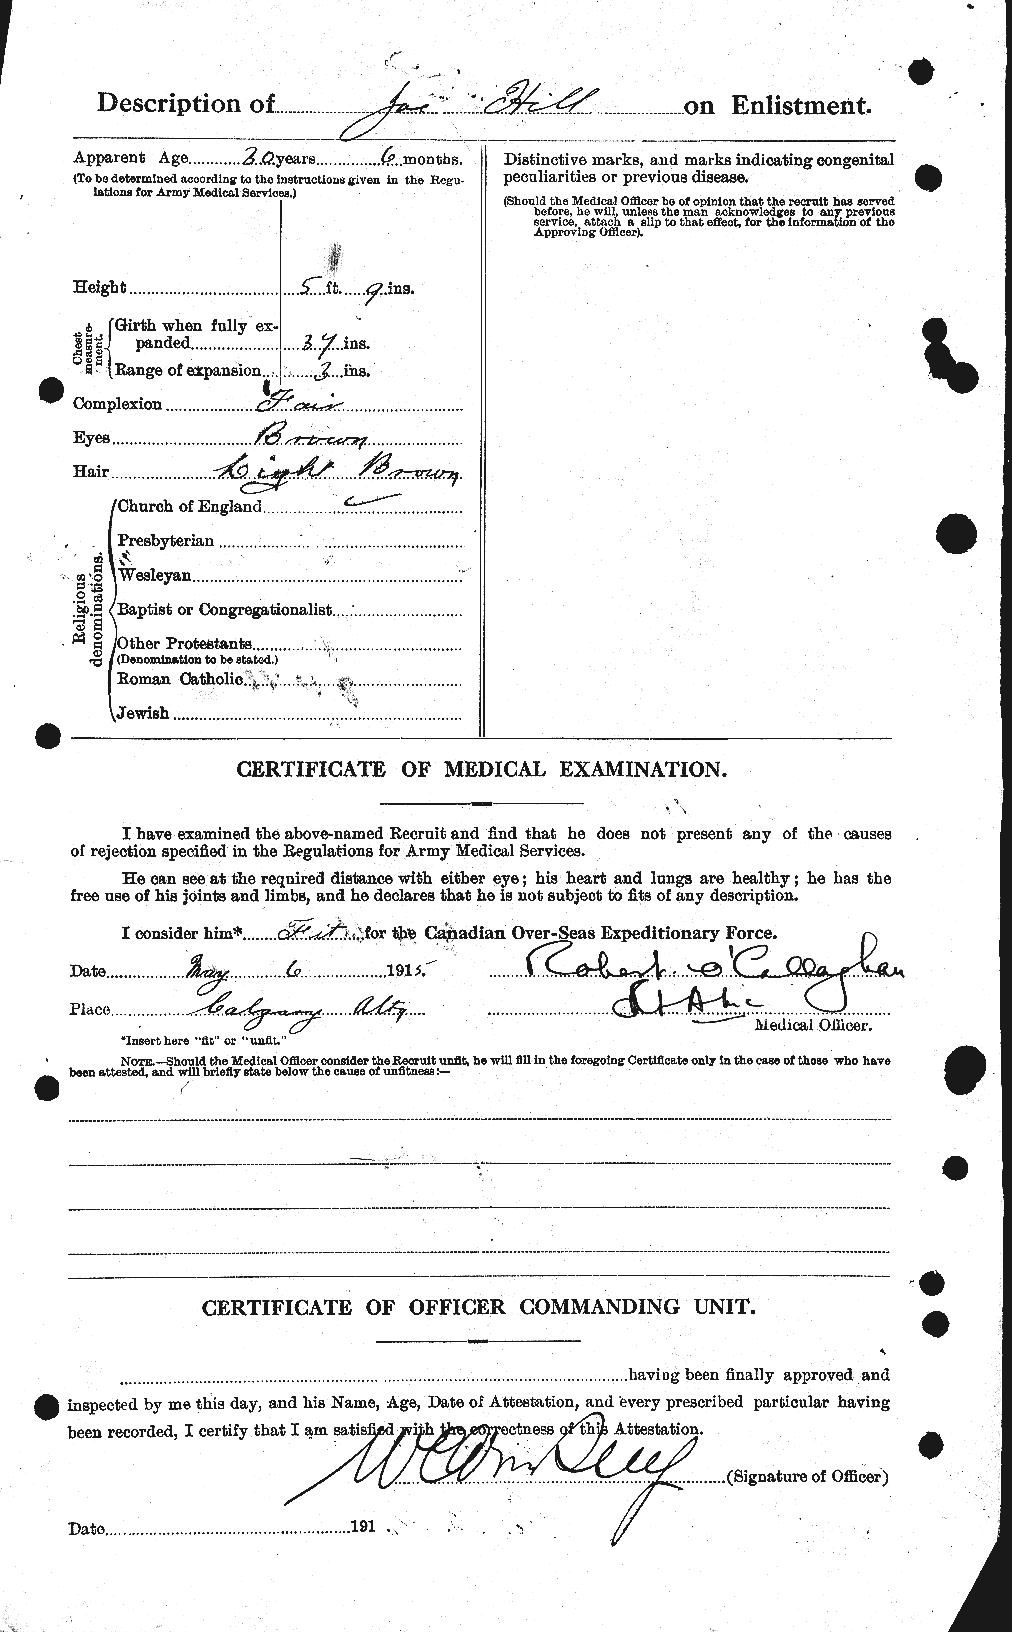 Dossiers du Personnel de la Première Guerre mondiale - CEC 398711b